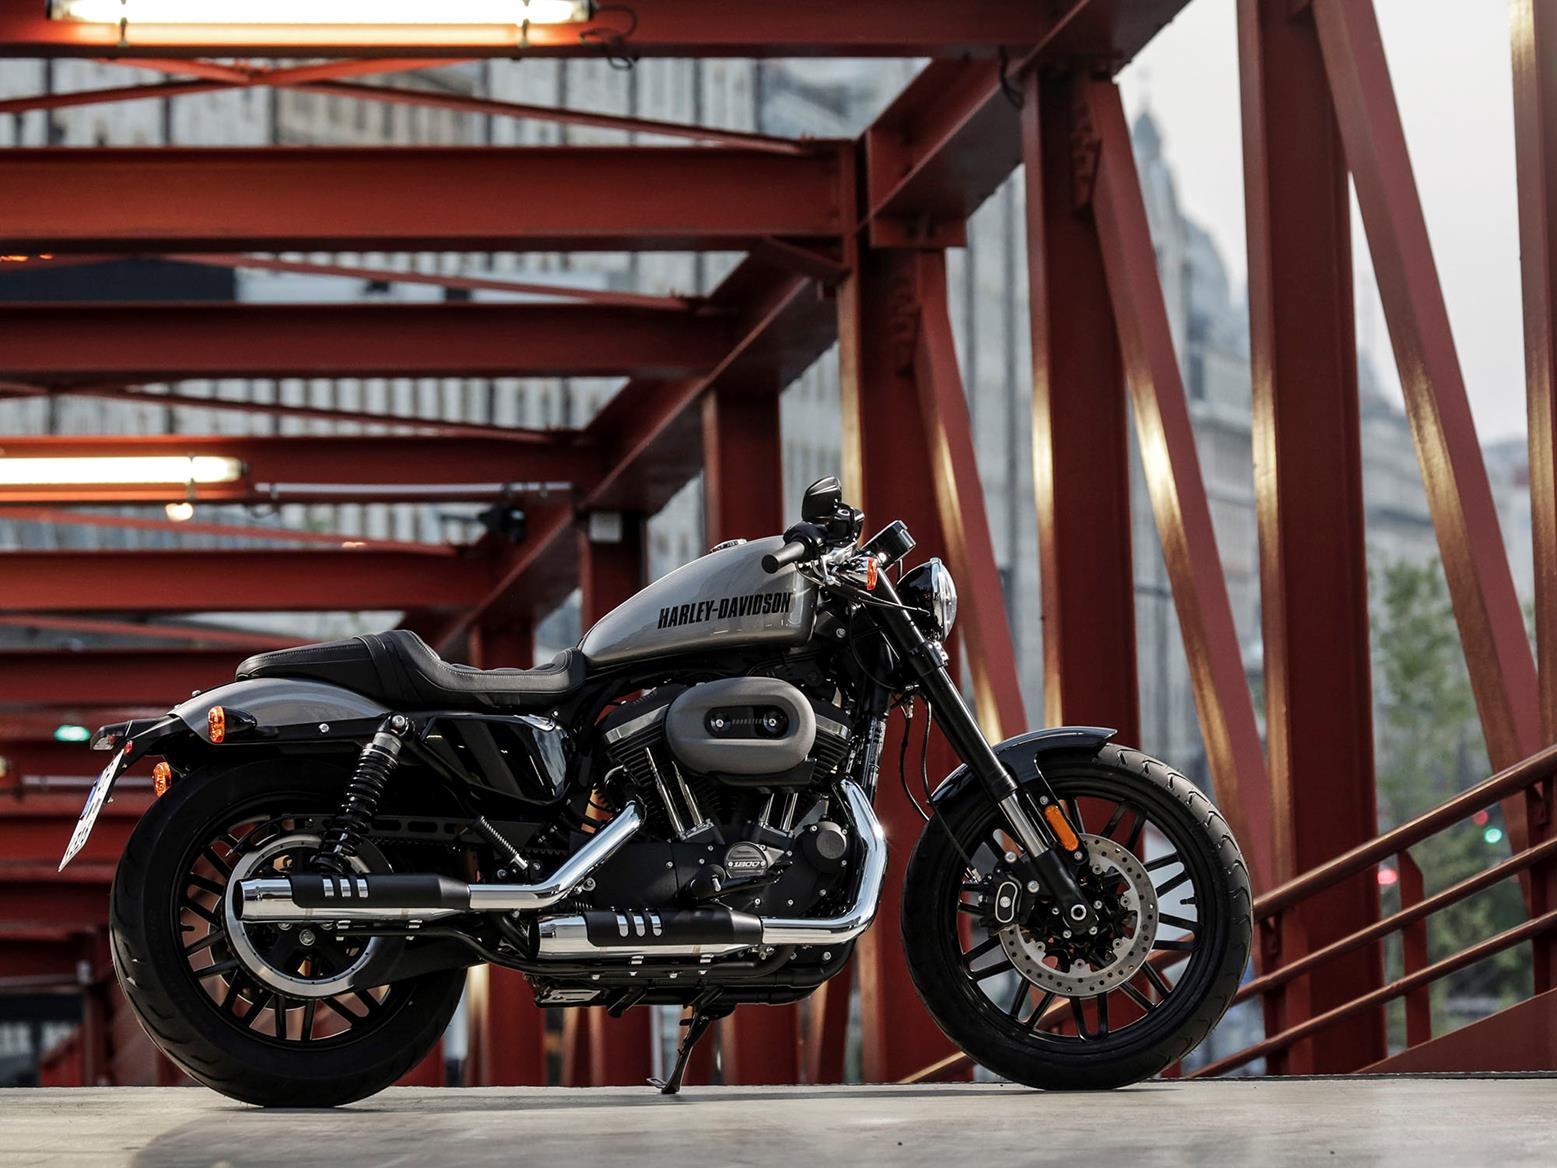 2016 Harley Sportster 1200 Value Off 78 Medpharmres Com